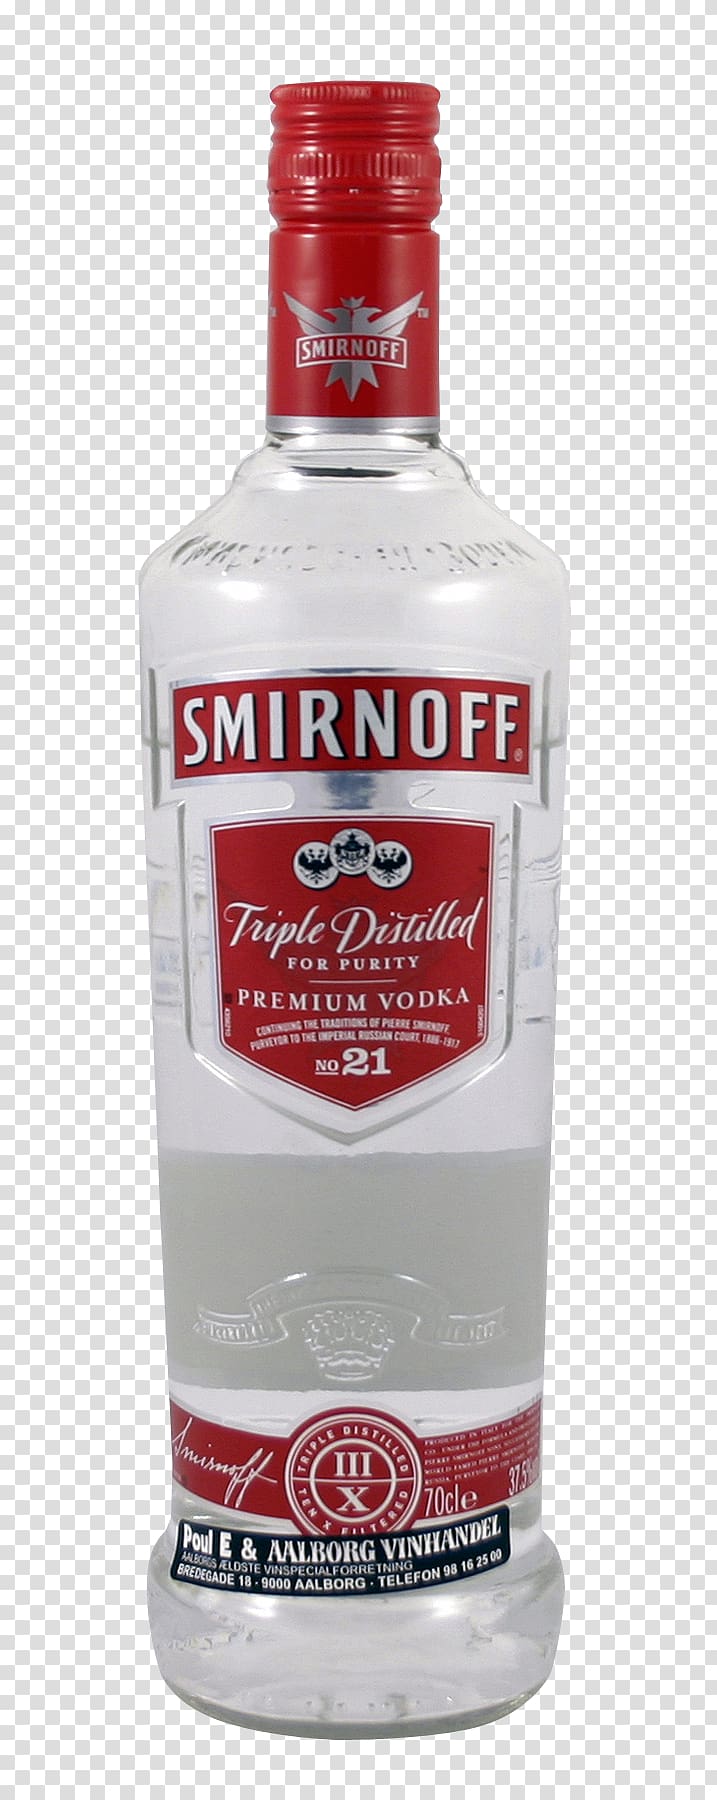 Smirnoff glass bottle, Vodka Distilled beverage Cocktail Stolichnaya Smirnoff, Vodka transparent background PNG clipart